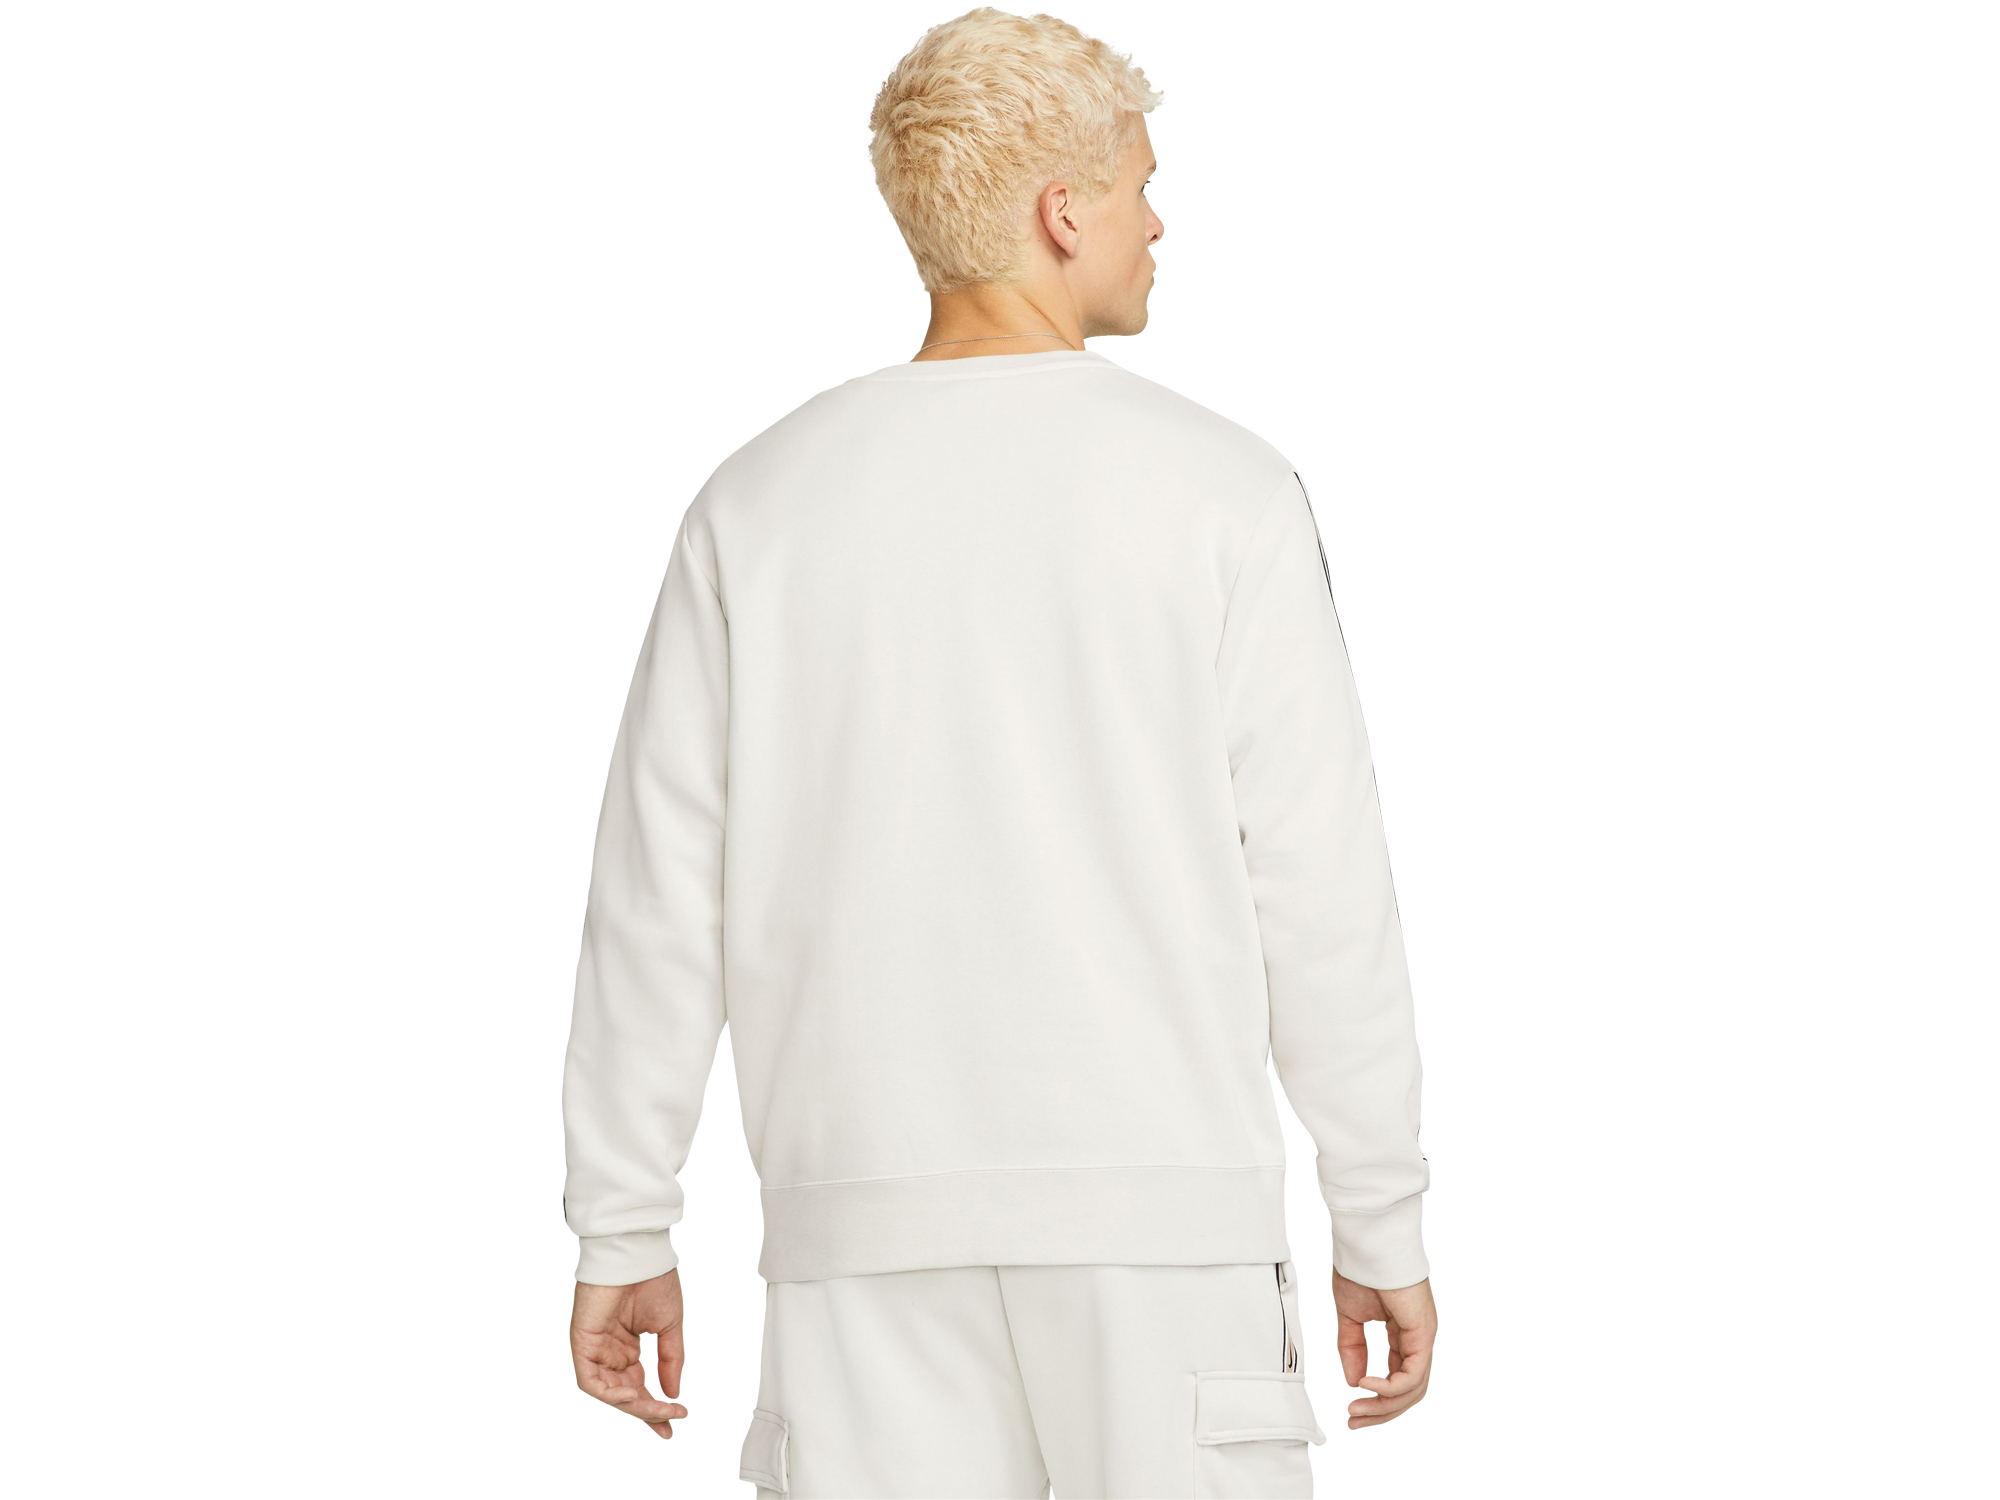 Nike Sportswear Repeat Fleece Sweatshirt